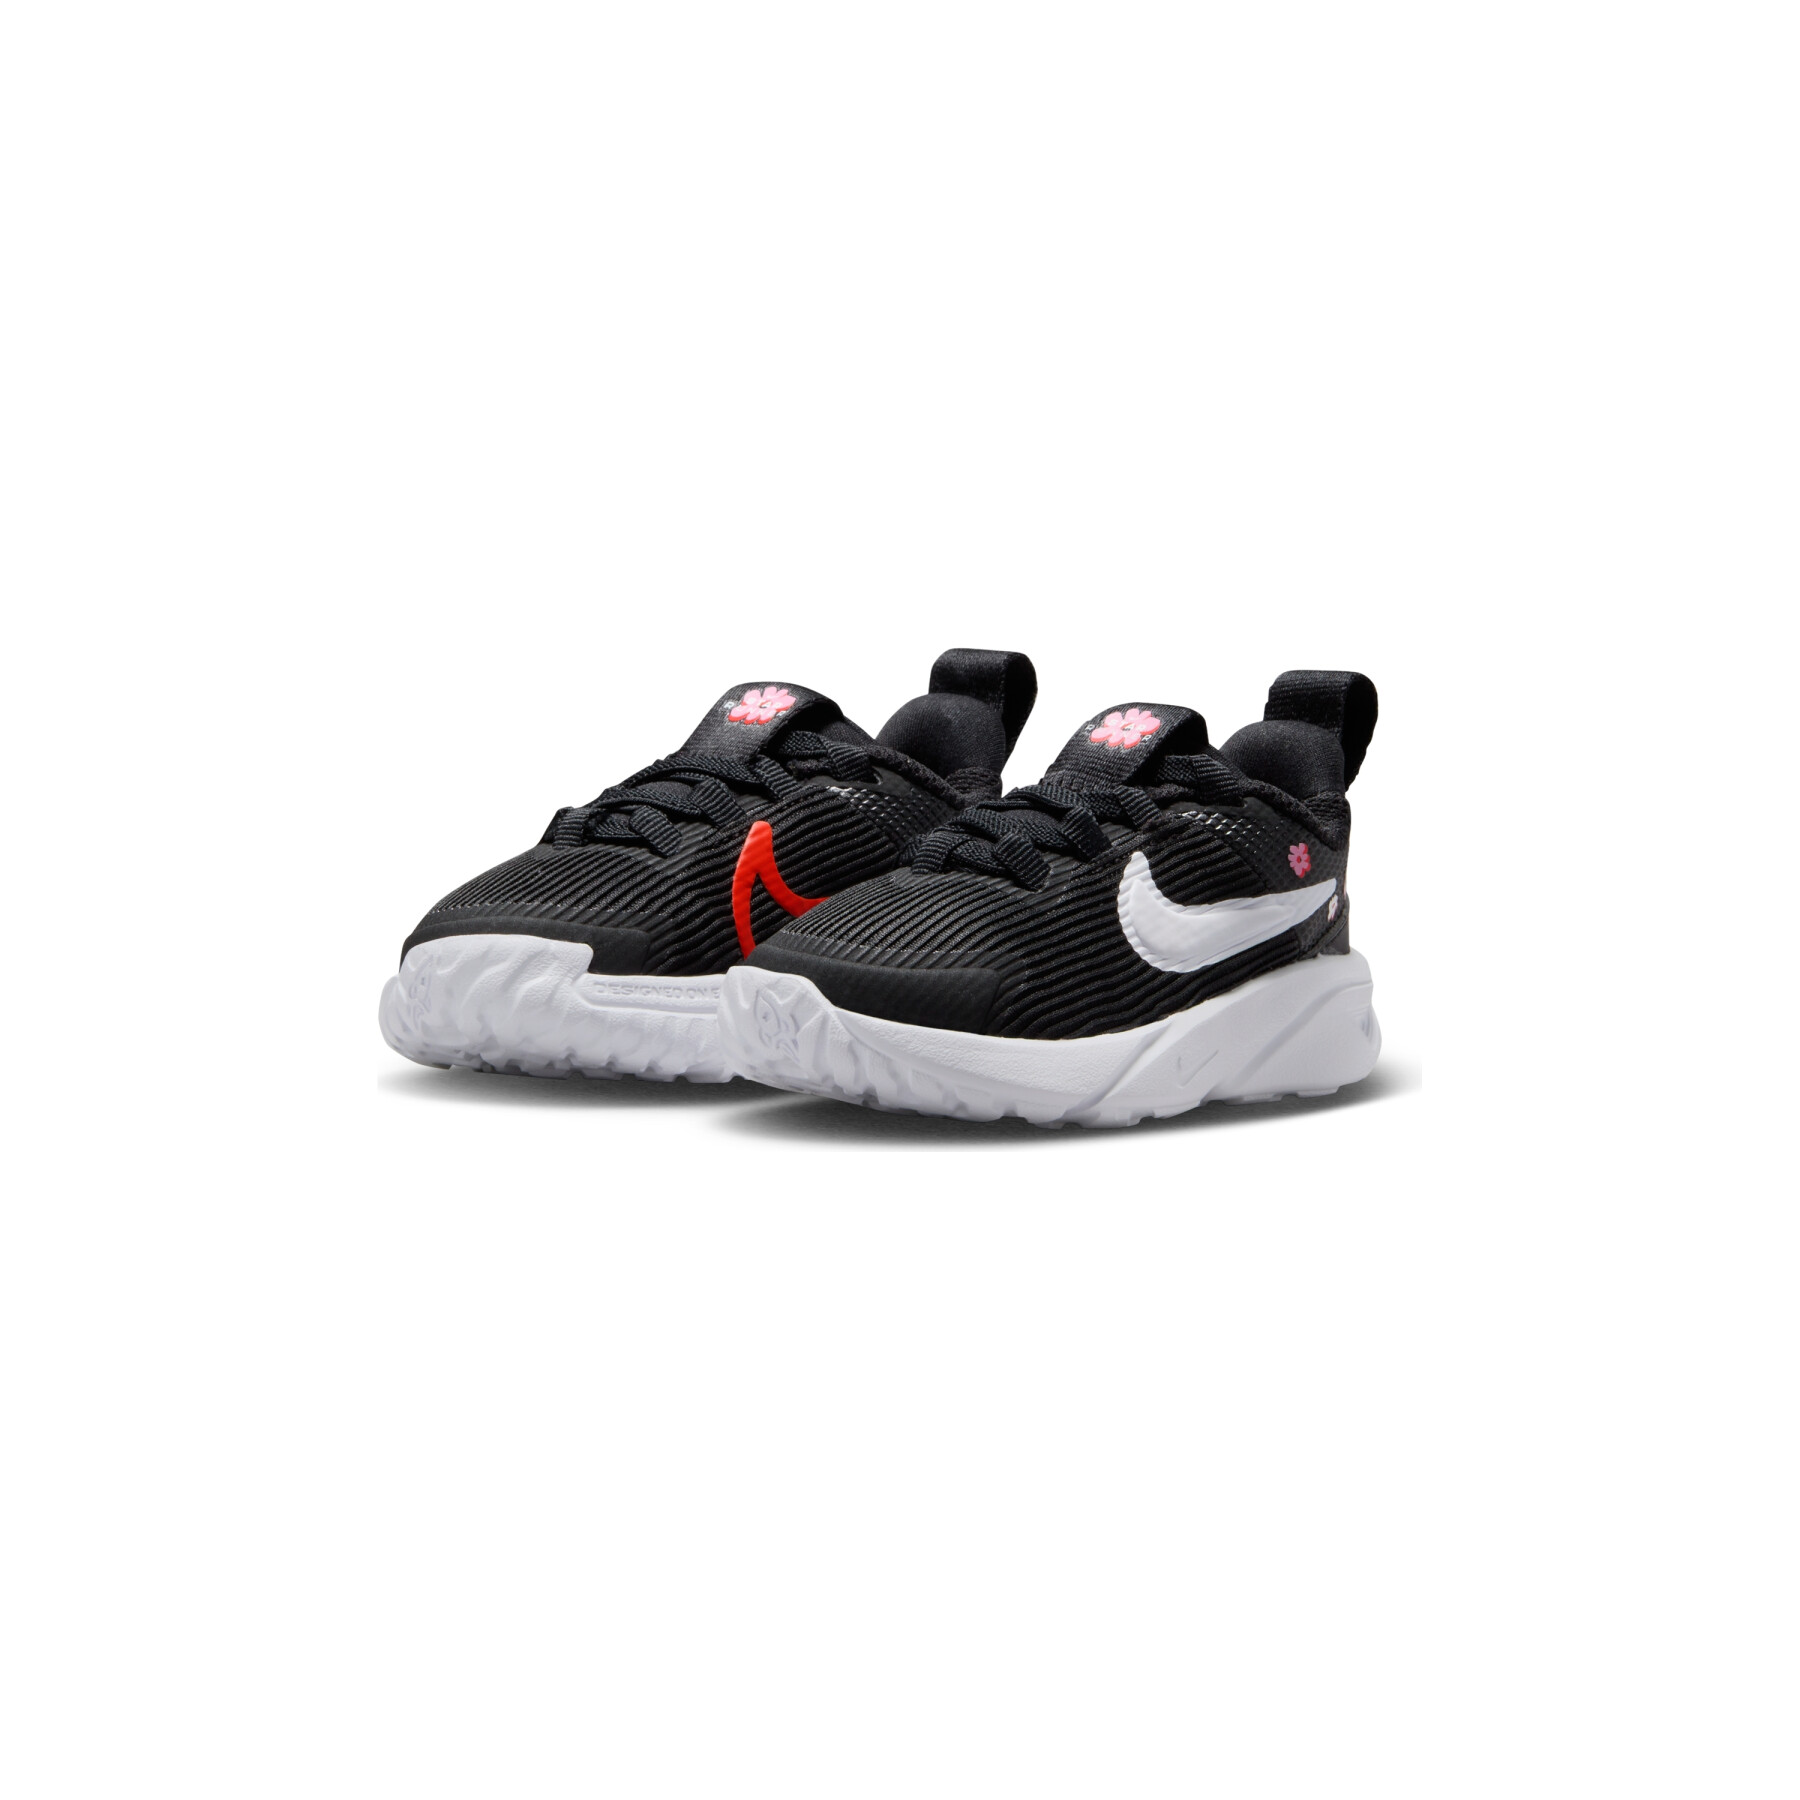 Sneakers für Babies Nike Star Runner 4